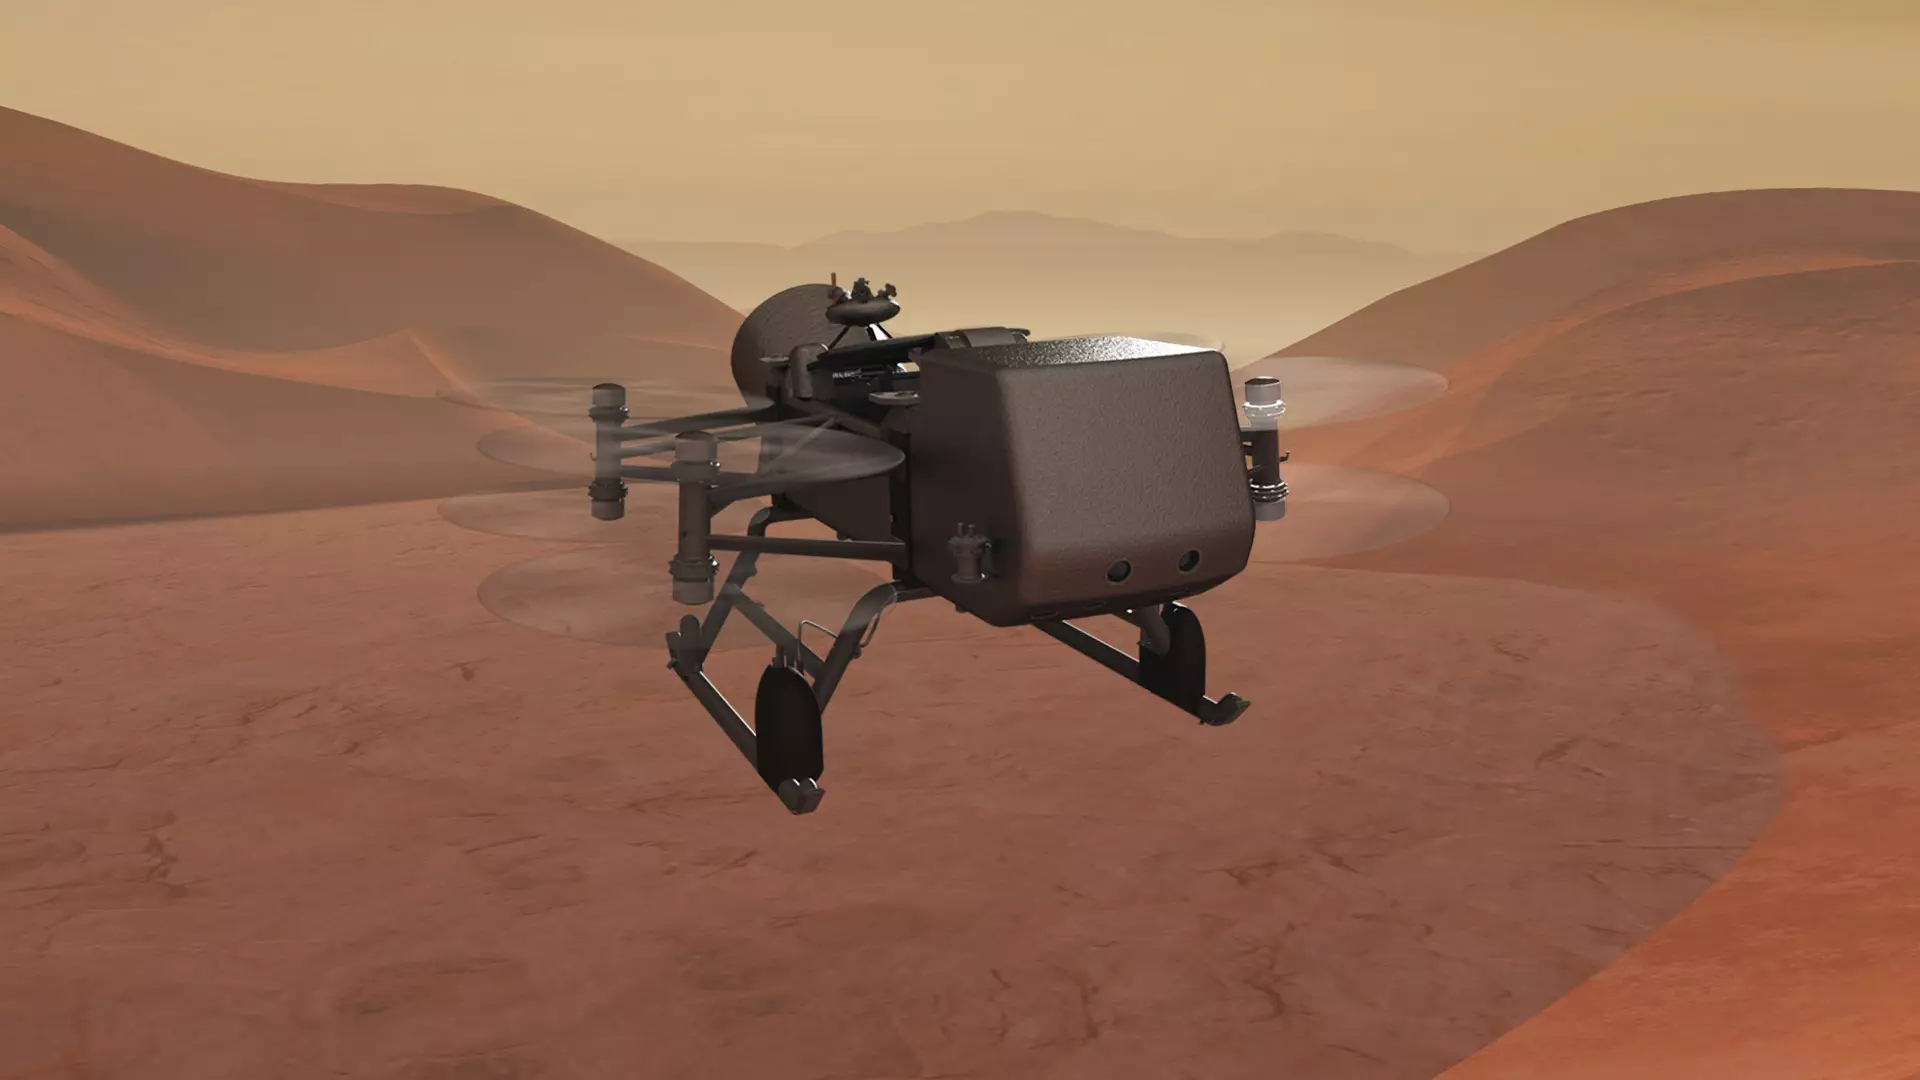 Мощности двигателей хватит чтобы поднять "Стрекозу" над поверхностью Титана на высоту в 14 километров